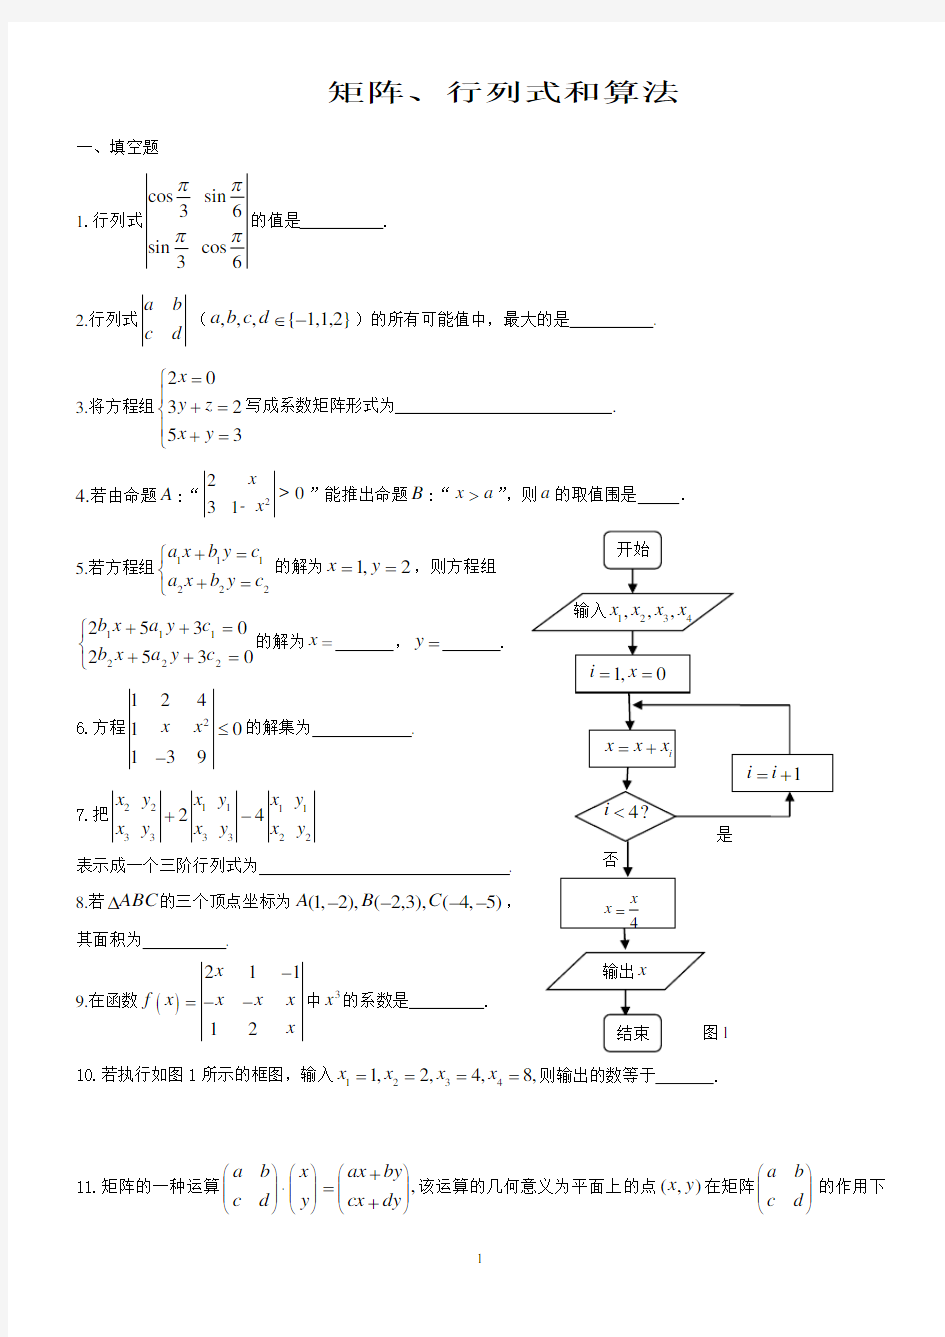 上海版教材_矩阵与行列式习题